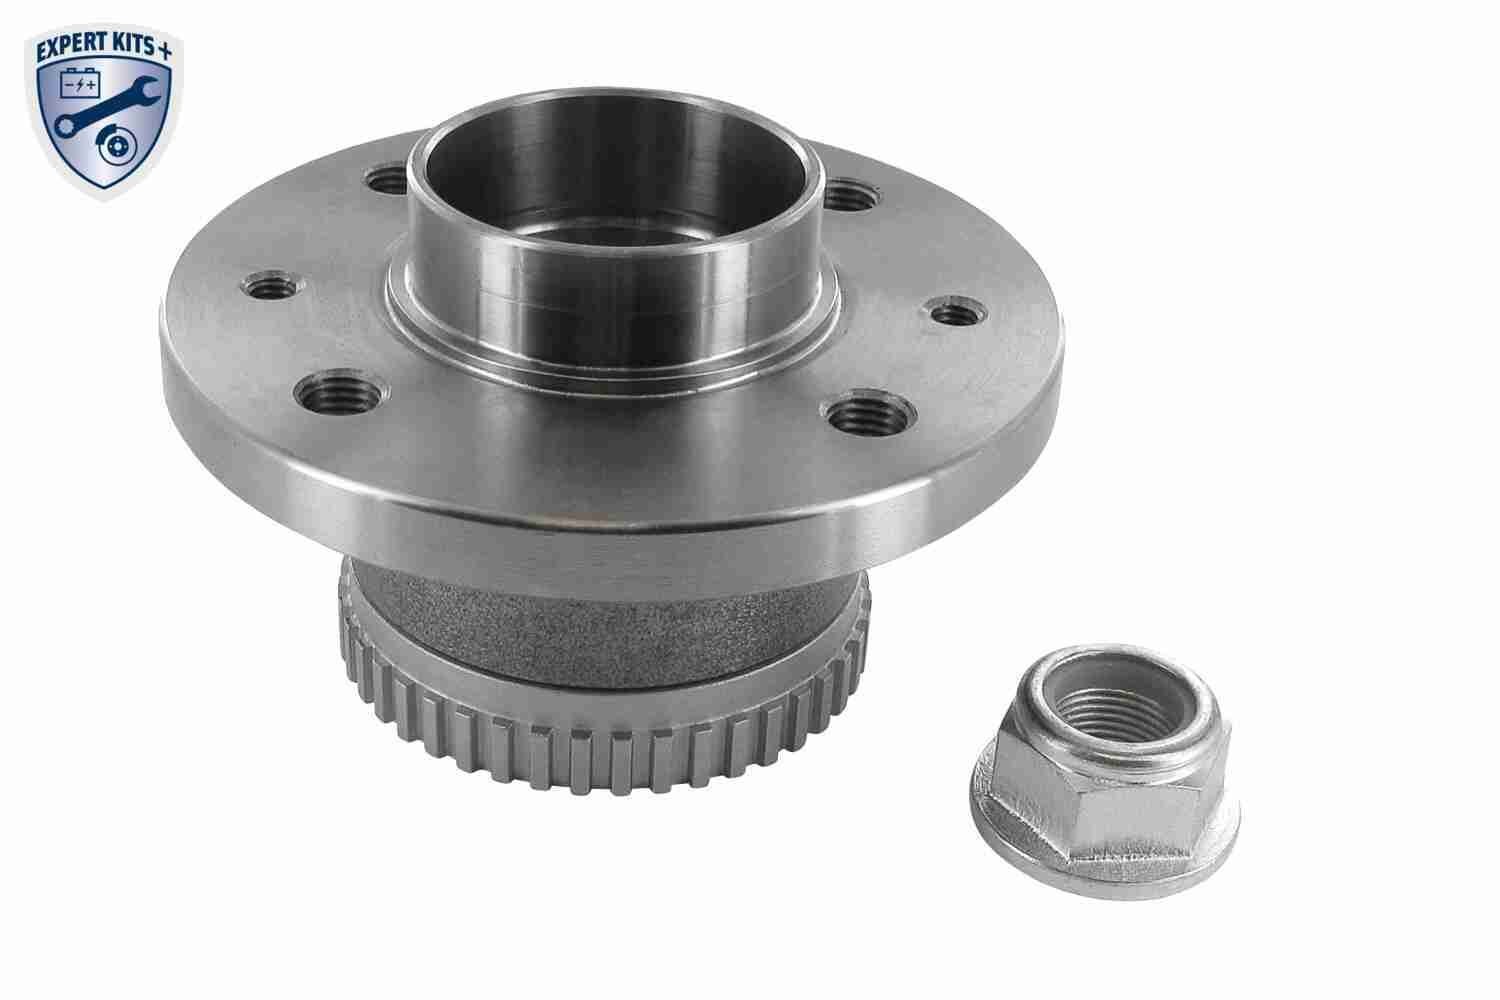 VAICO V46-0093 Wheel bearing kit Rear Axle, EXPERT KITS +, 133, 132,6 mm